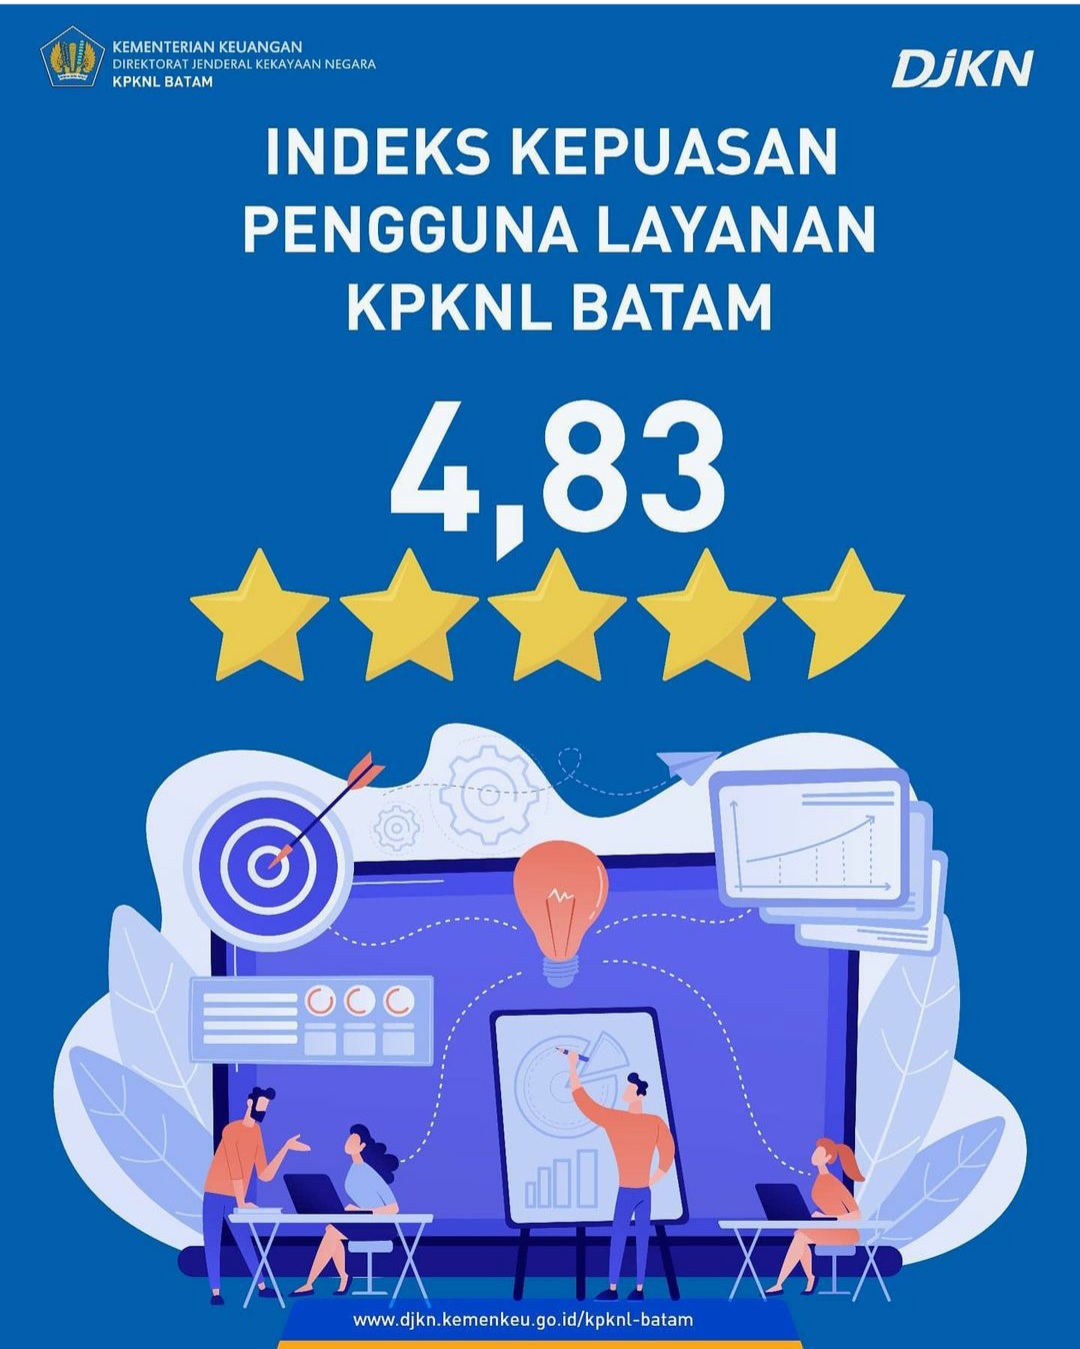 KPKNL BATAM RAIH IKPL 4.83 di Tahun 2020